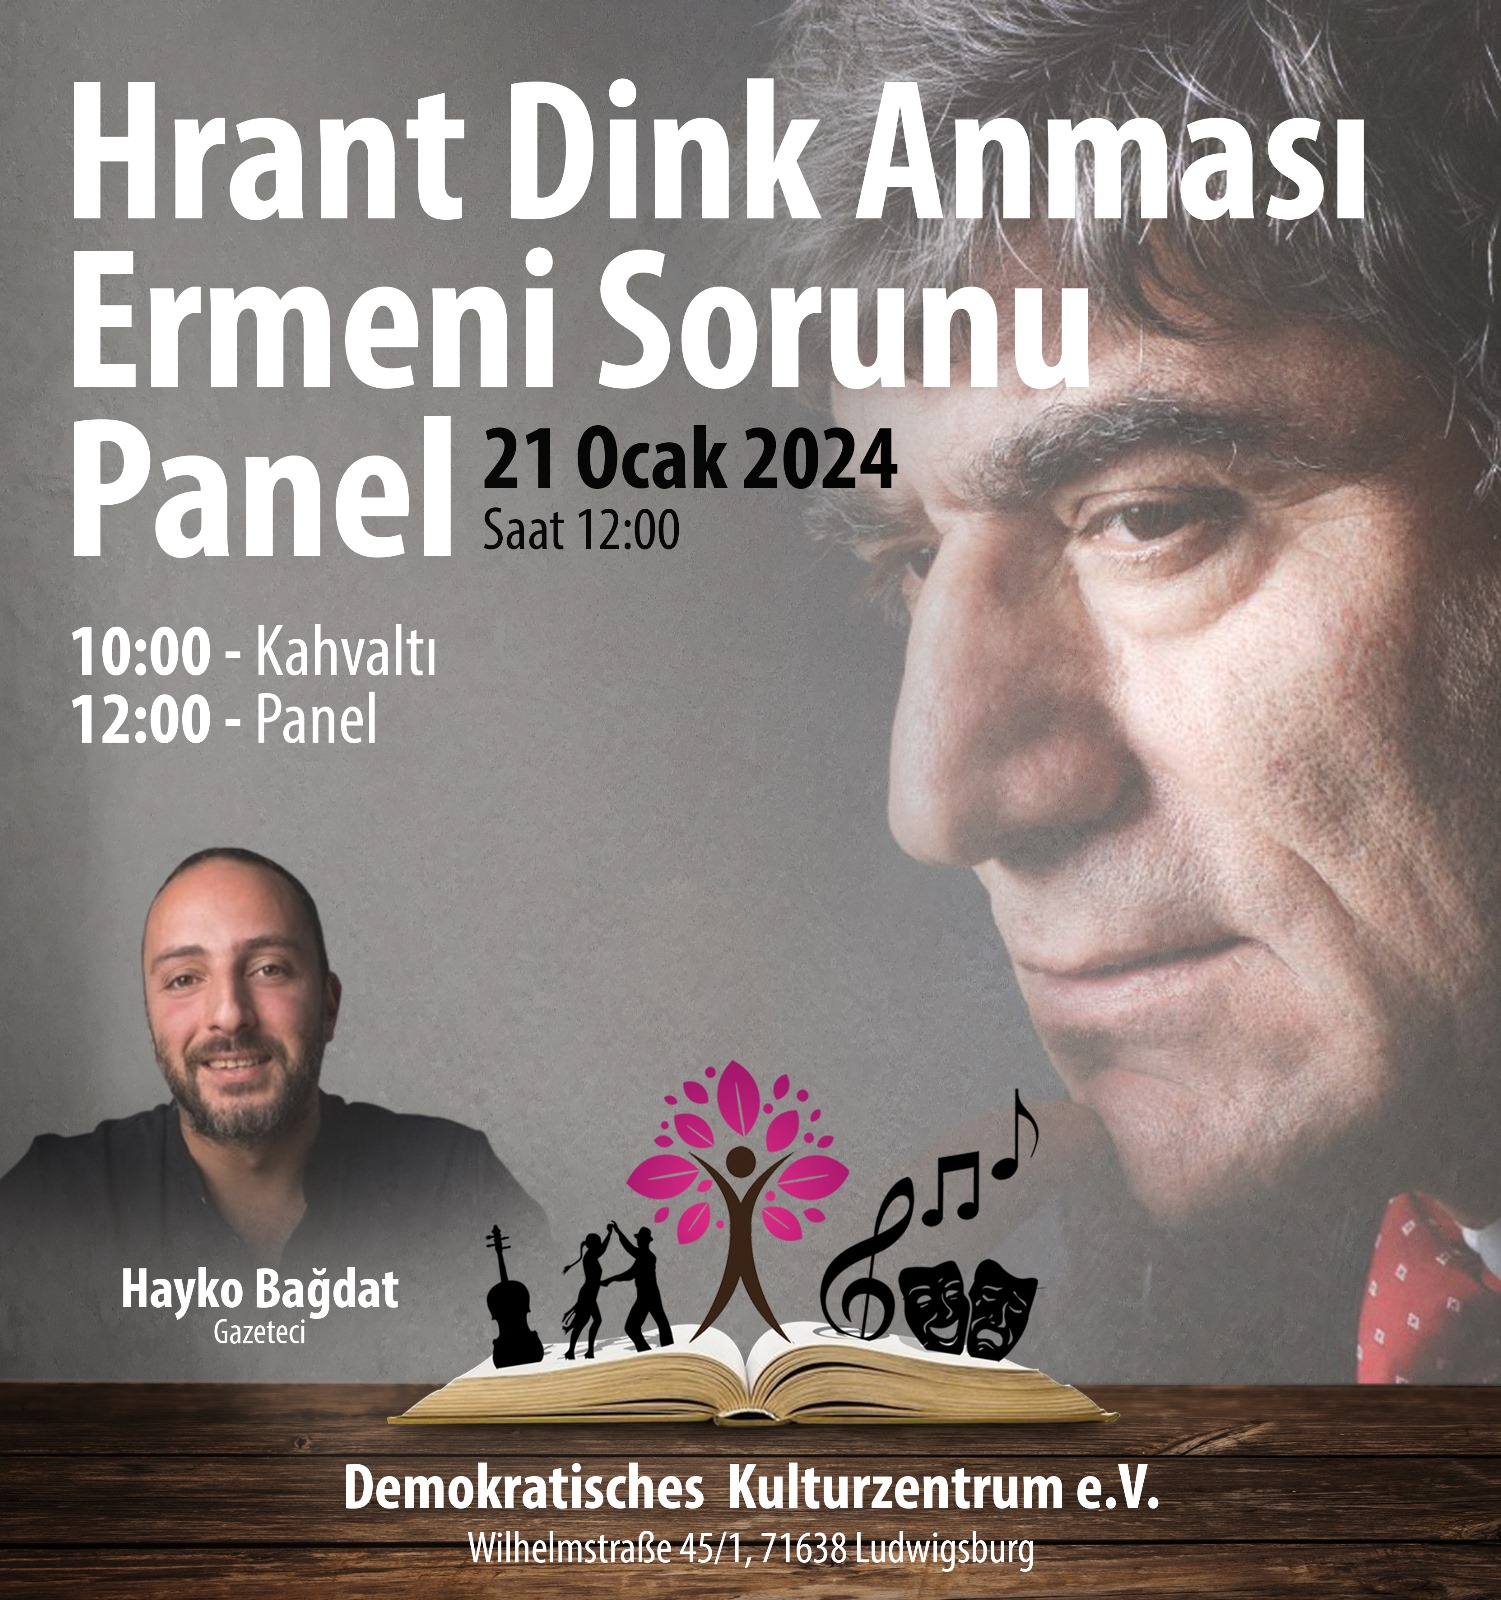 Hrant Dink katledilişinin 17. Yılında Ludwigsburg Demokratik Kültür Merkezinde anıldı. konulu fotoğraflar